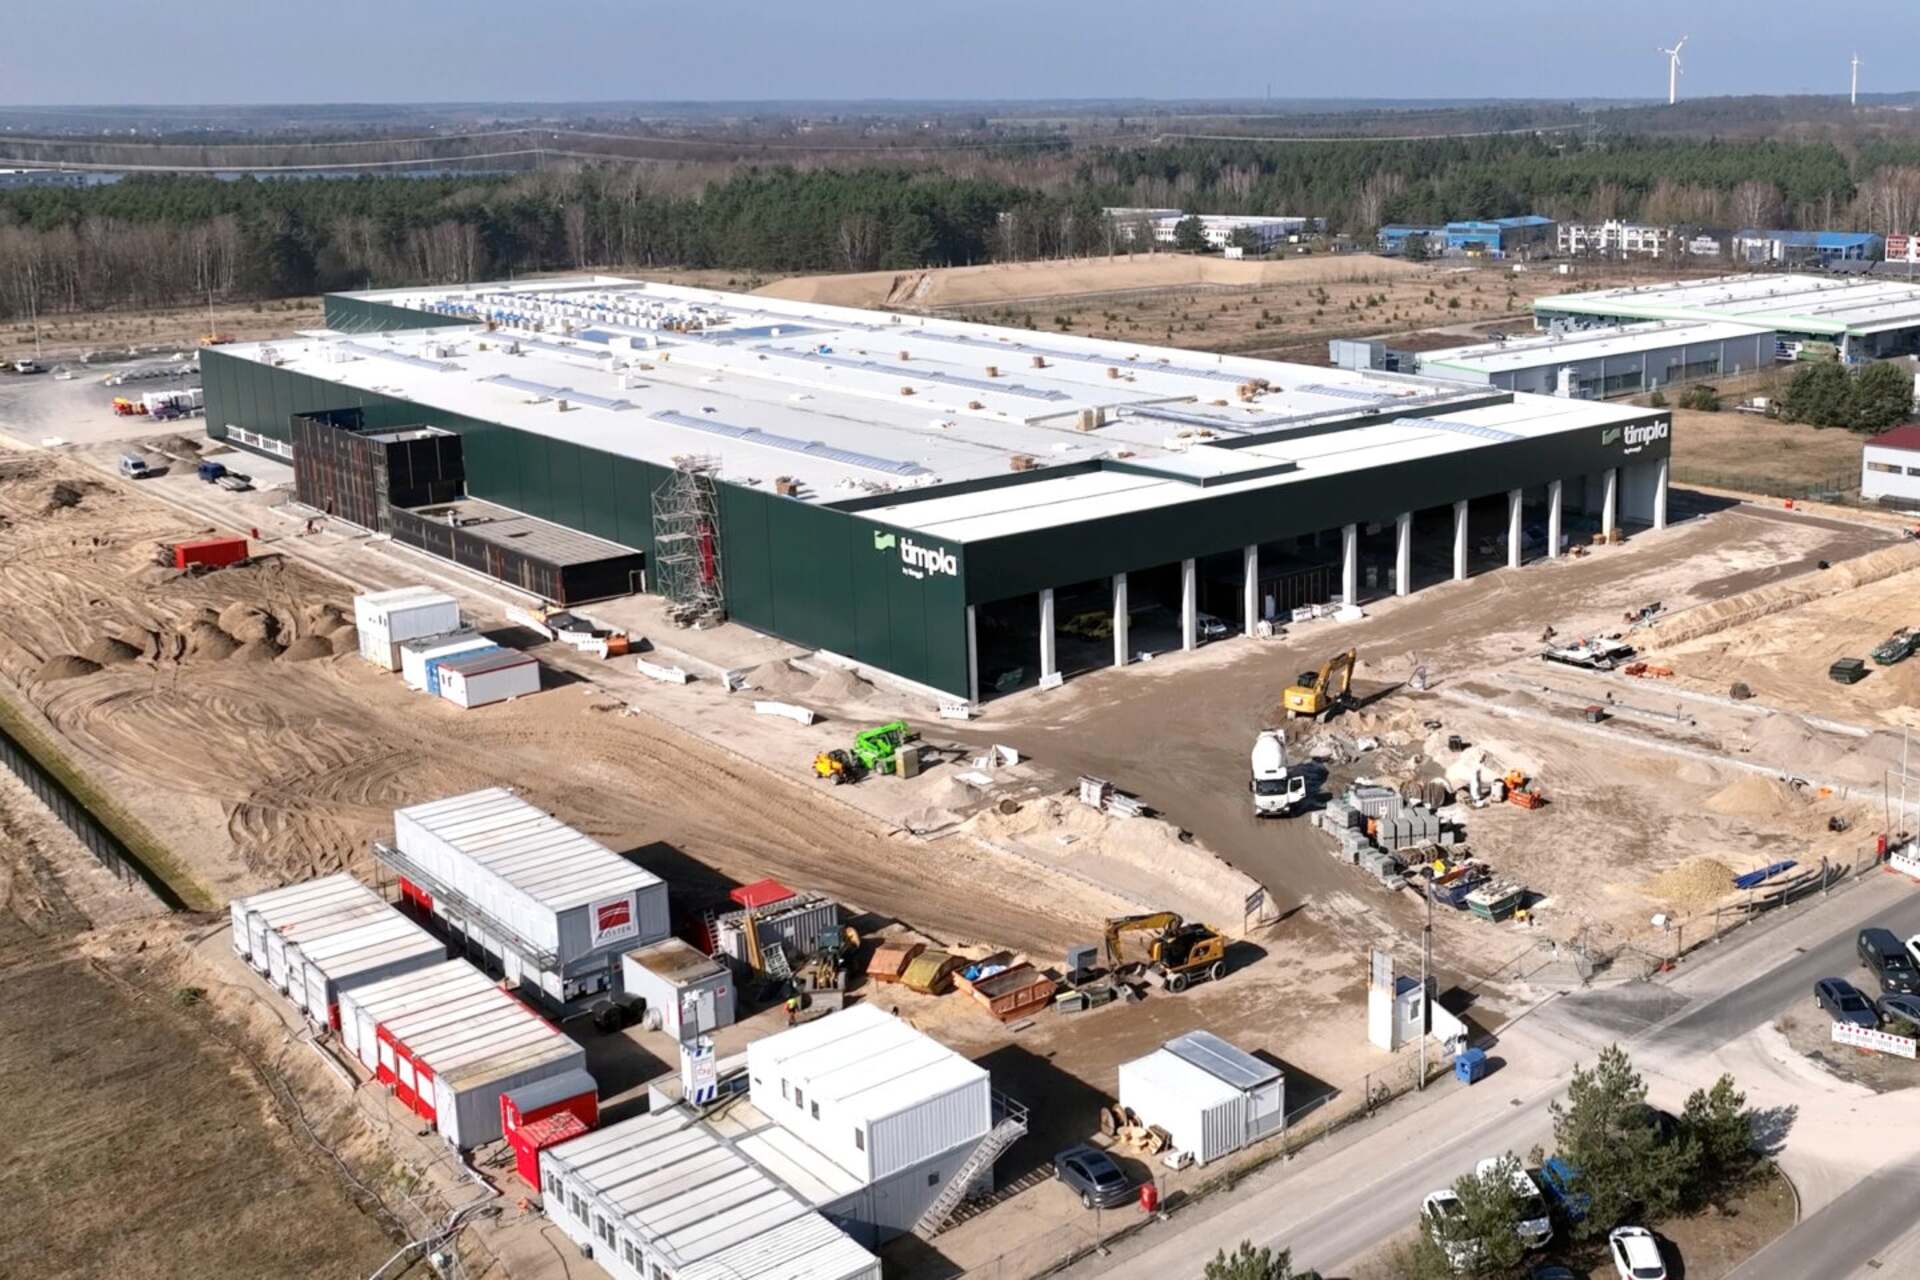 Statyba: Timpla GmbH įmonės medinių modulių gamykla Eberswalde, Vokietijos Brandenburgo žemėje